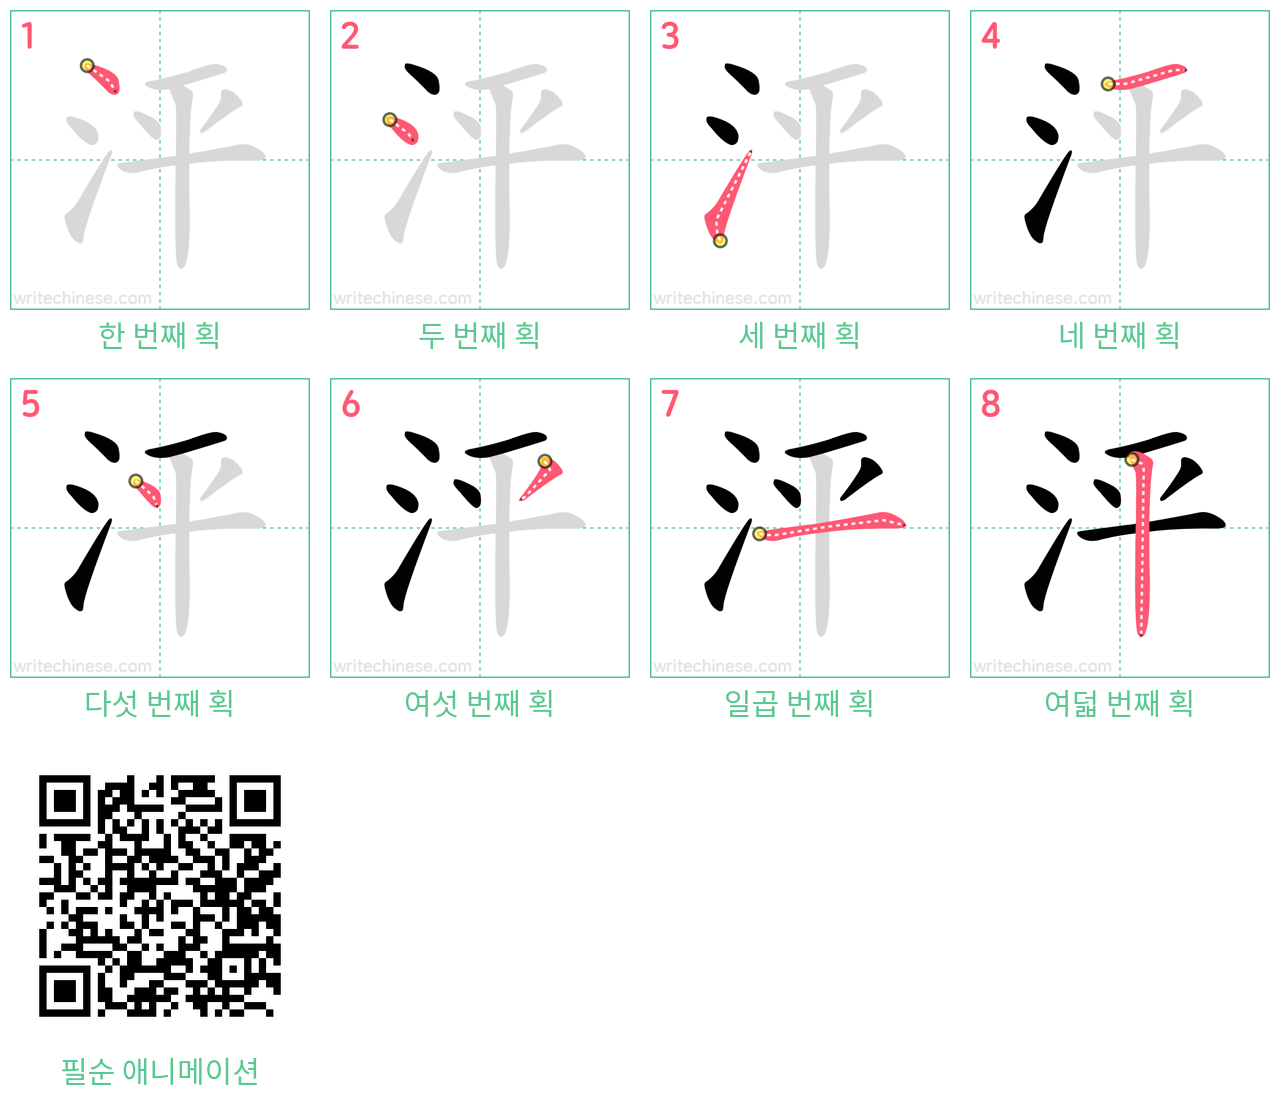 泙 step-by-step stroke order diagrams